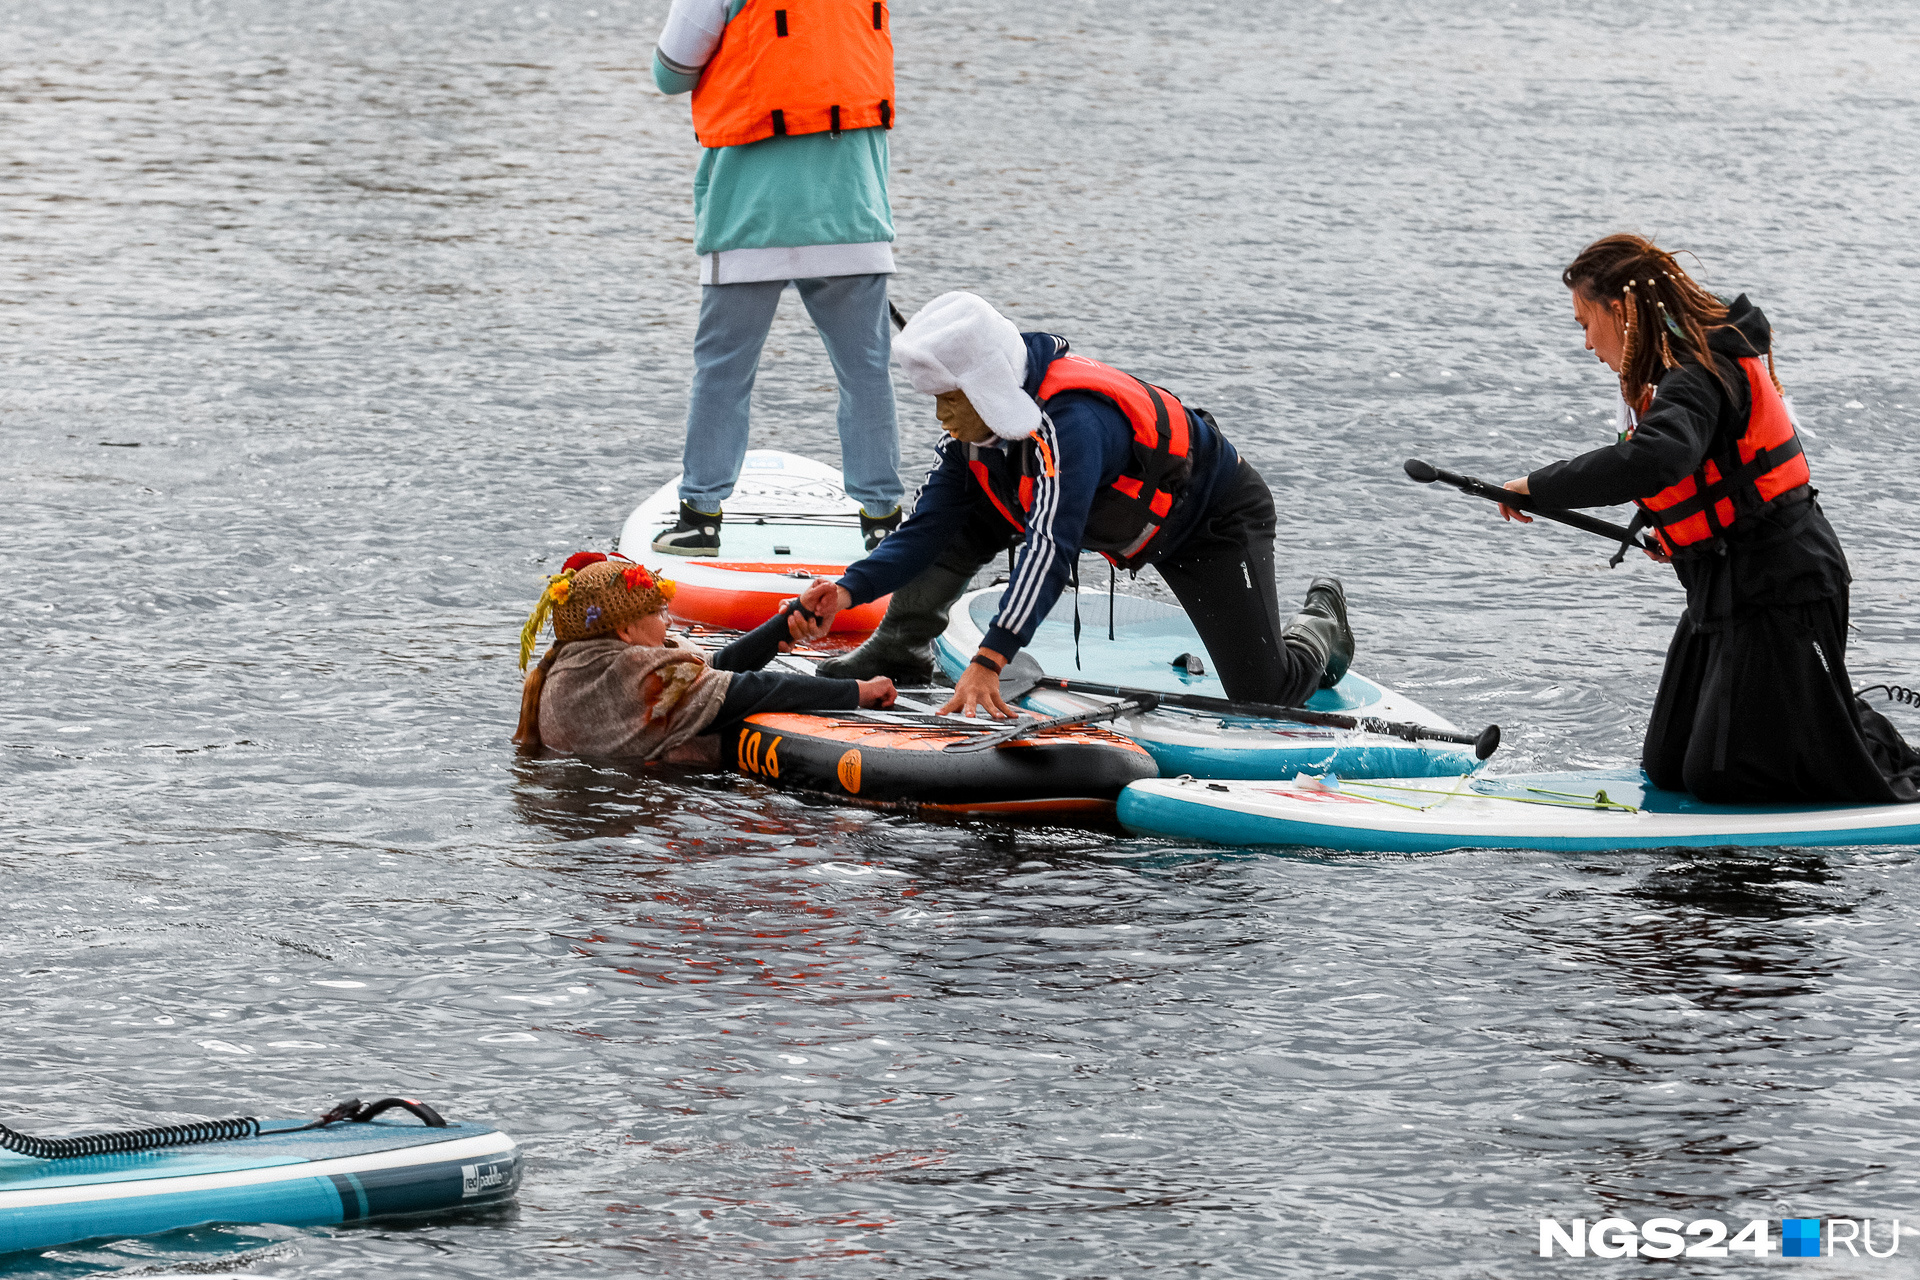 Не все смогли доплыть до финиша — одна из участниц оказалась в ледяной воде